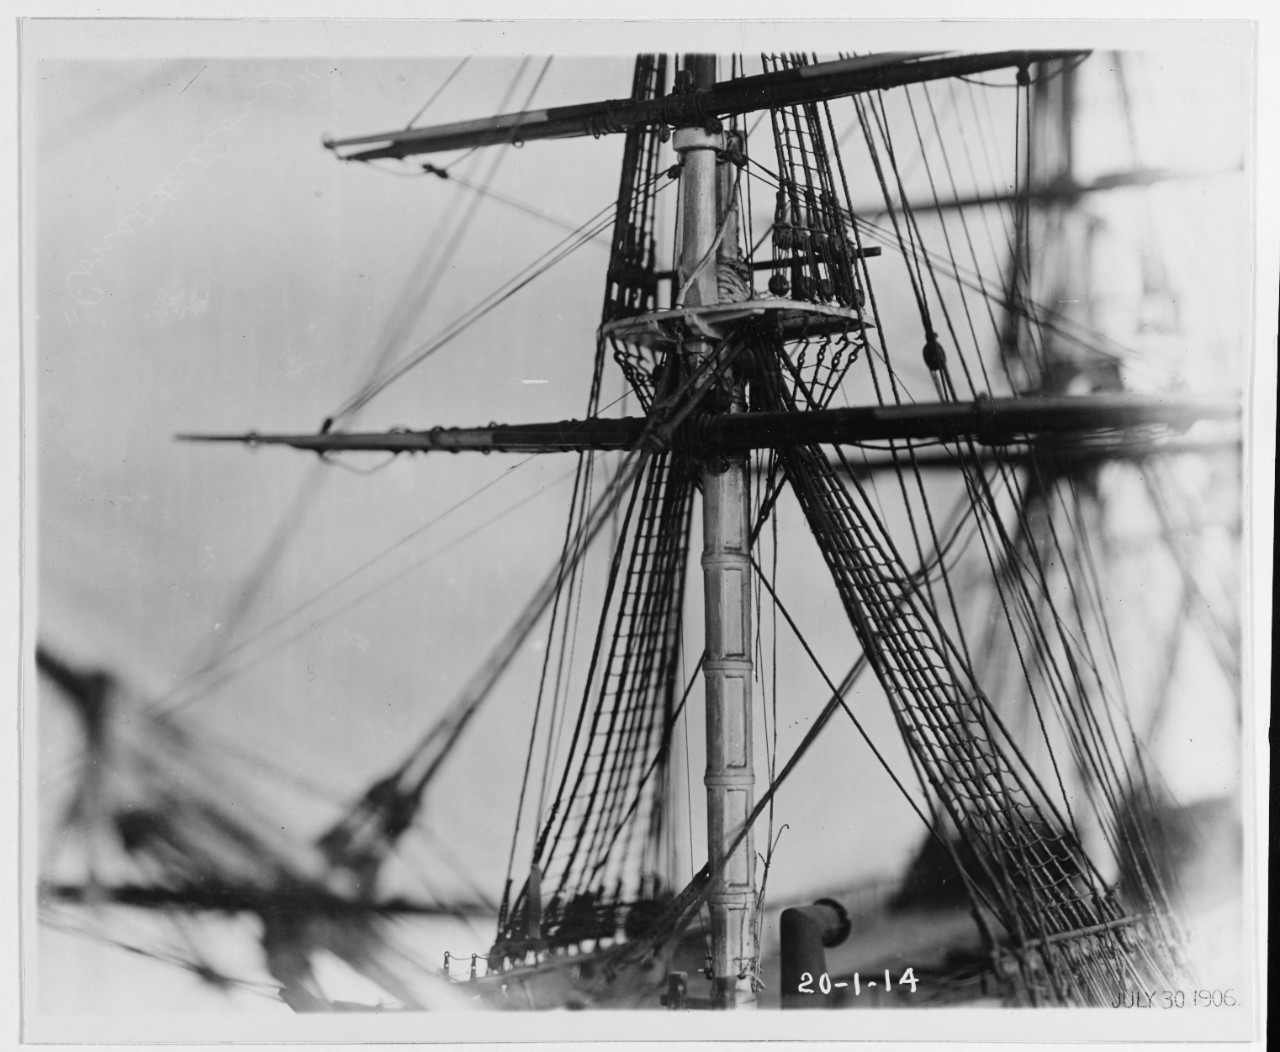 USS CONSTITUTION, 1797